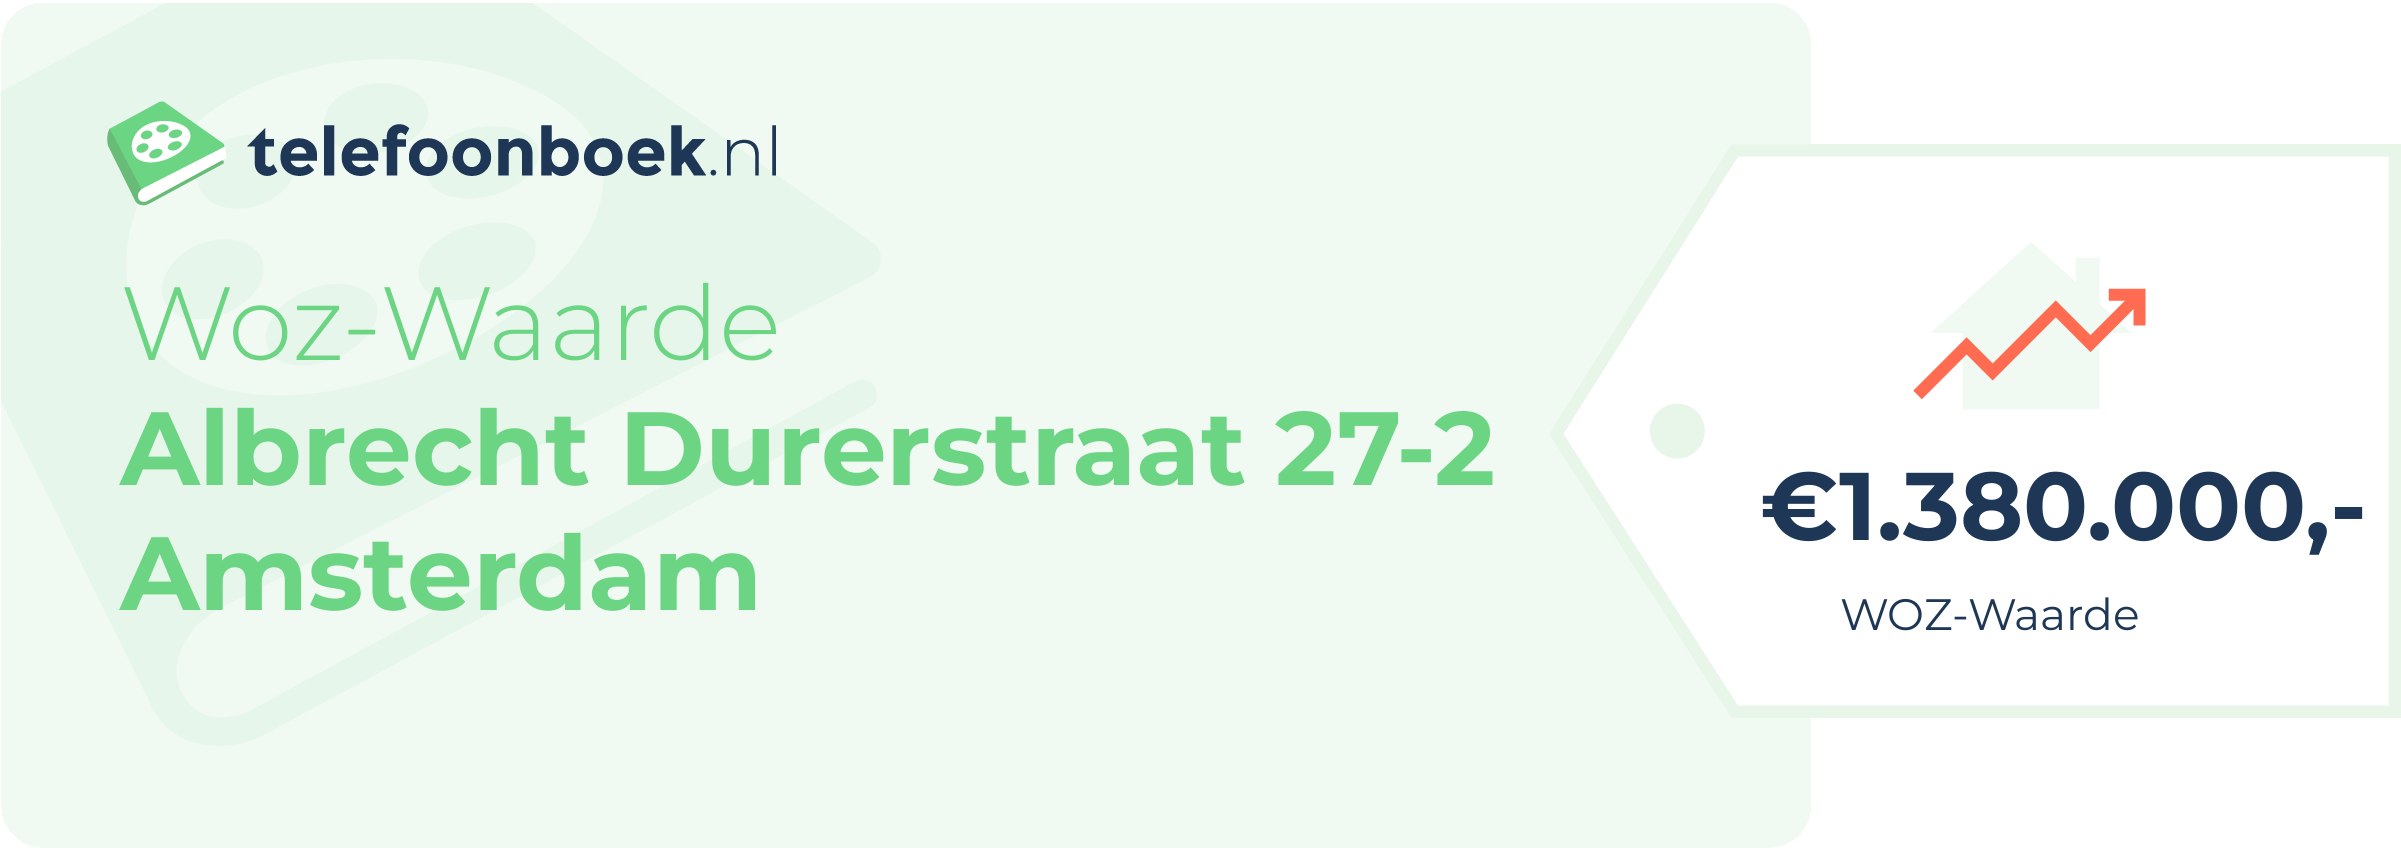 WOZ-waarde Albrecht Durerstraat 27-2 Amsterdam